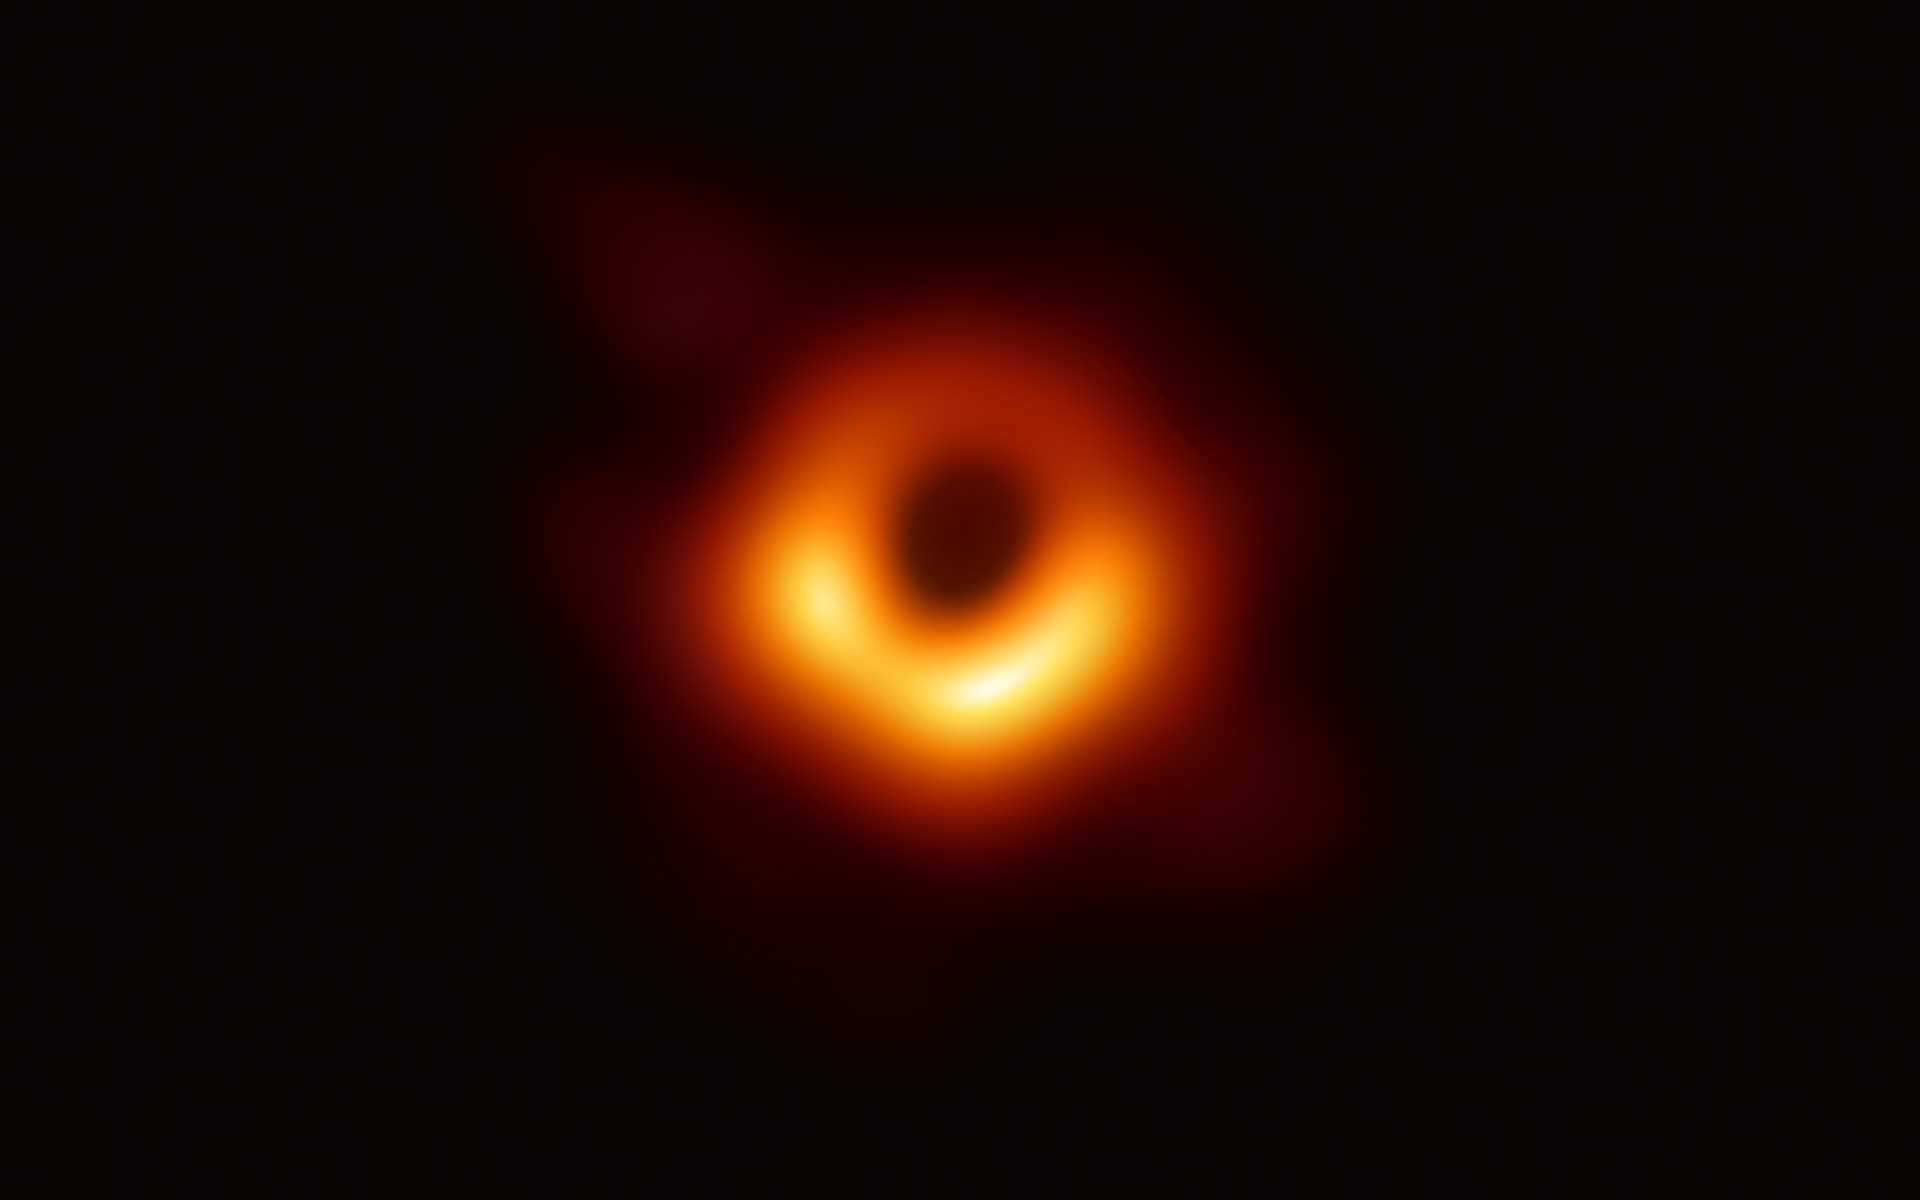 중심의 검은 부분은 블랙홀